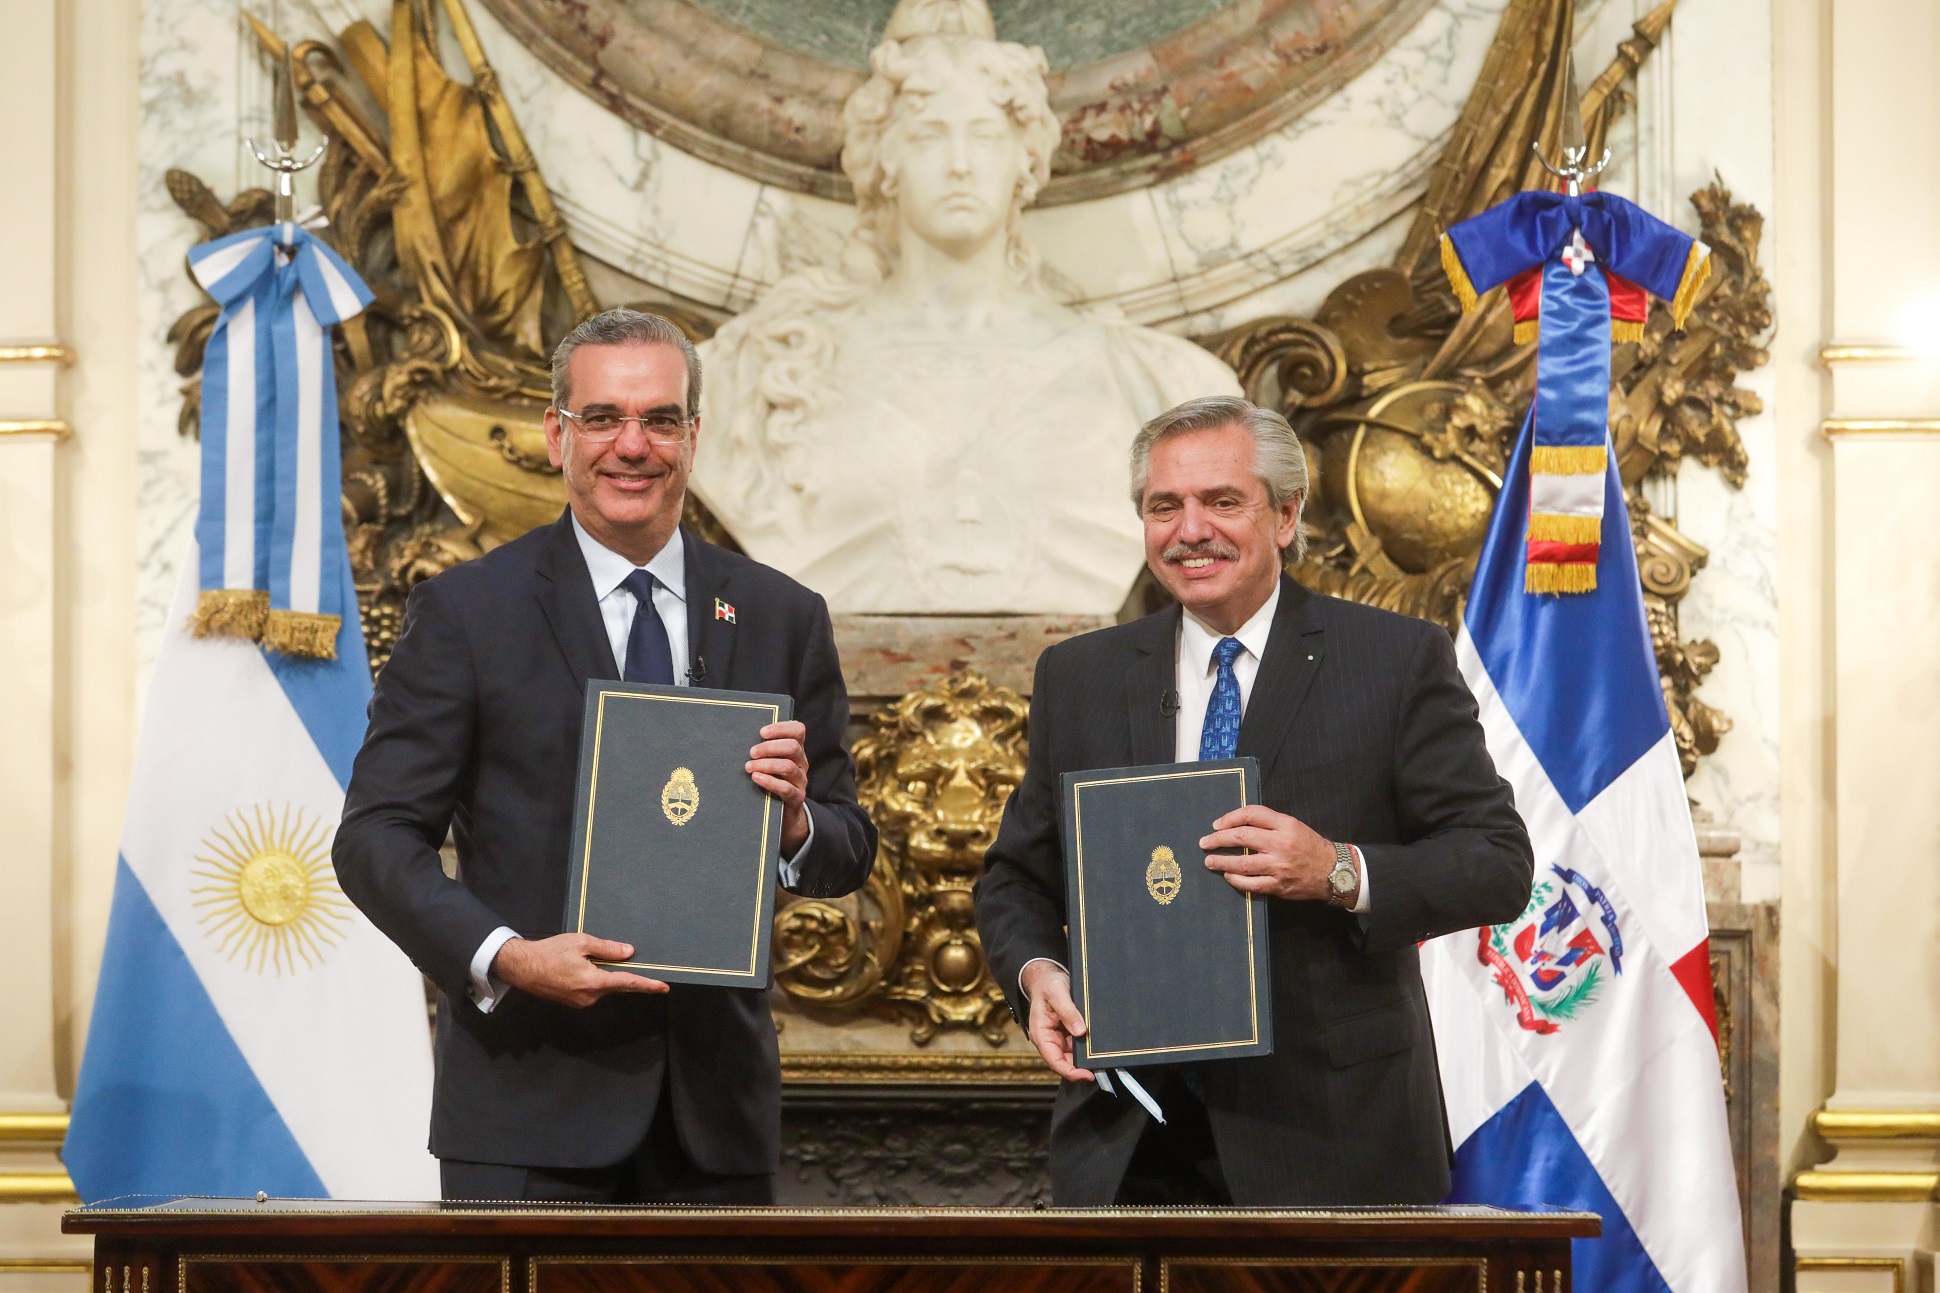 El presidente firmó acuerdos de cooperación productiva y sanitaria con su par de República Dominicana